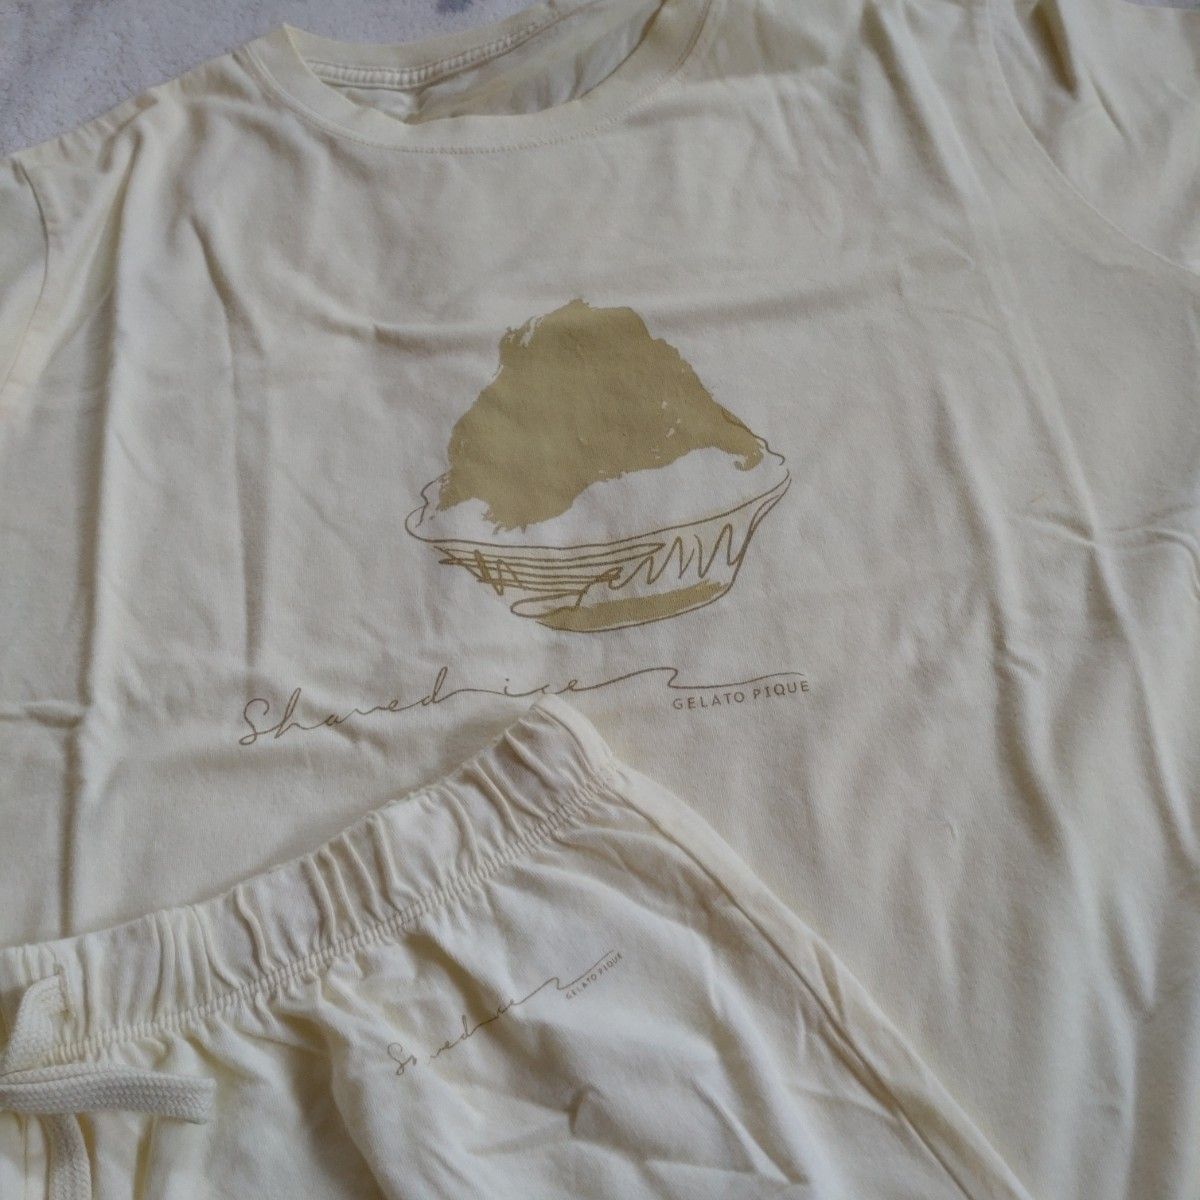 ジェラートピケ gelatopique かき氷 半袖Tシャツ ショートパンツ ルームウェア セット